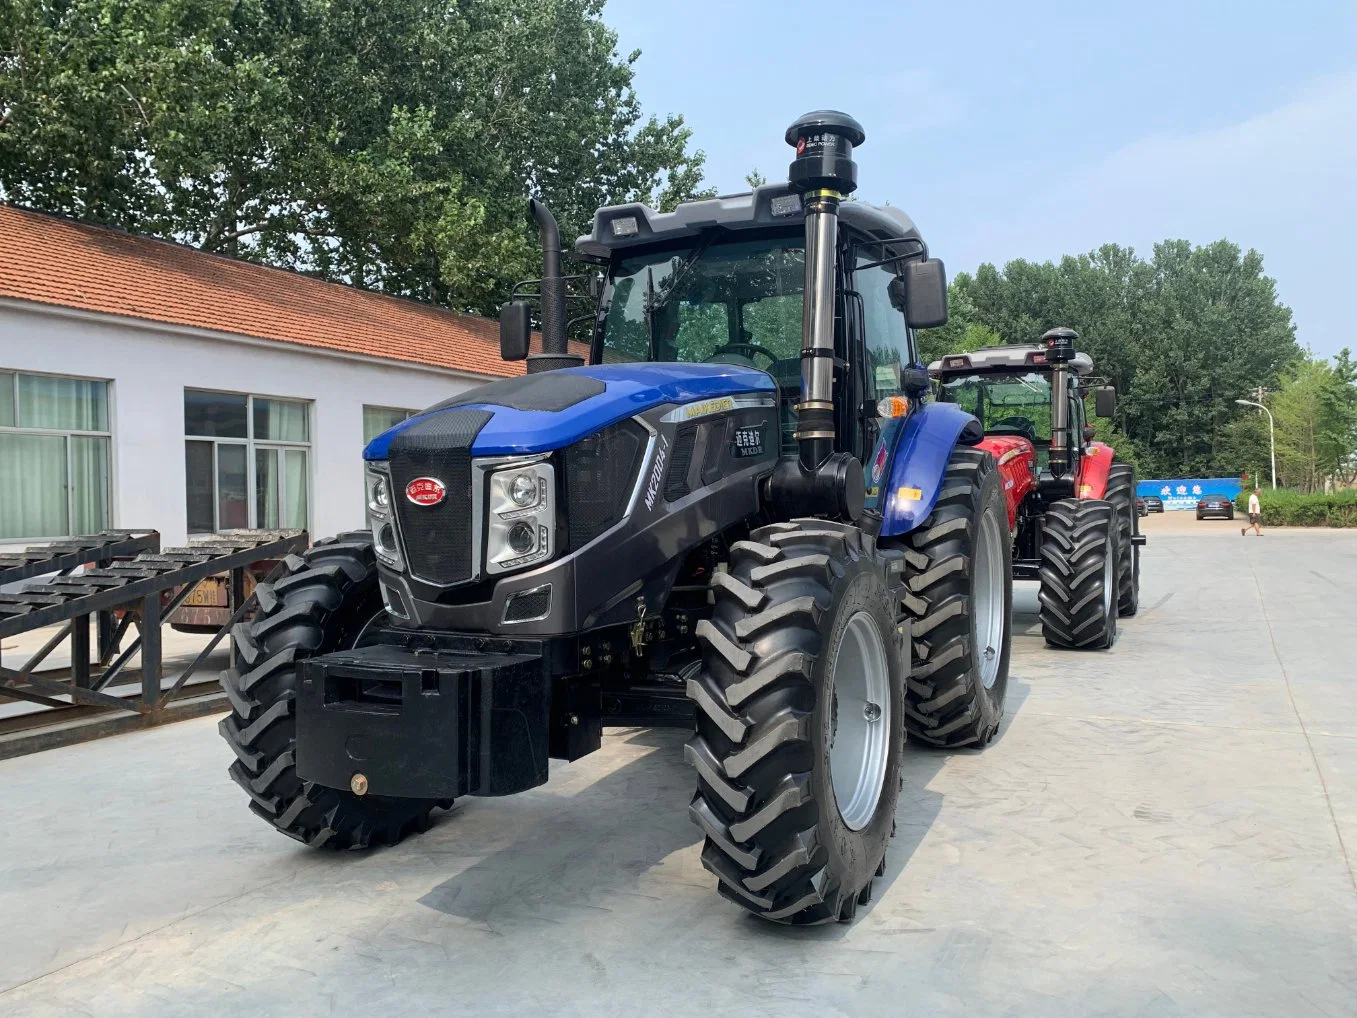 Grand Tracteur agricole/petit tracteur agricole de machines agricoles pour la ferme/serre/agriculture/transports avec une haute qualité